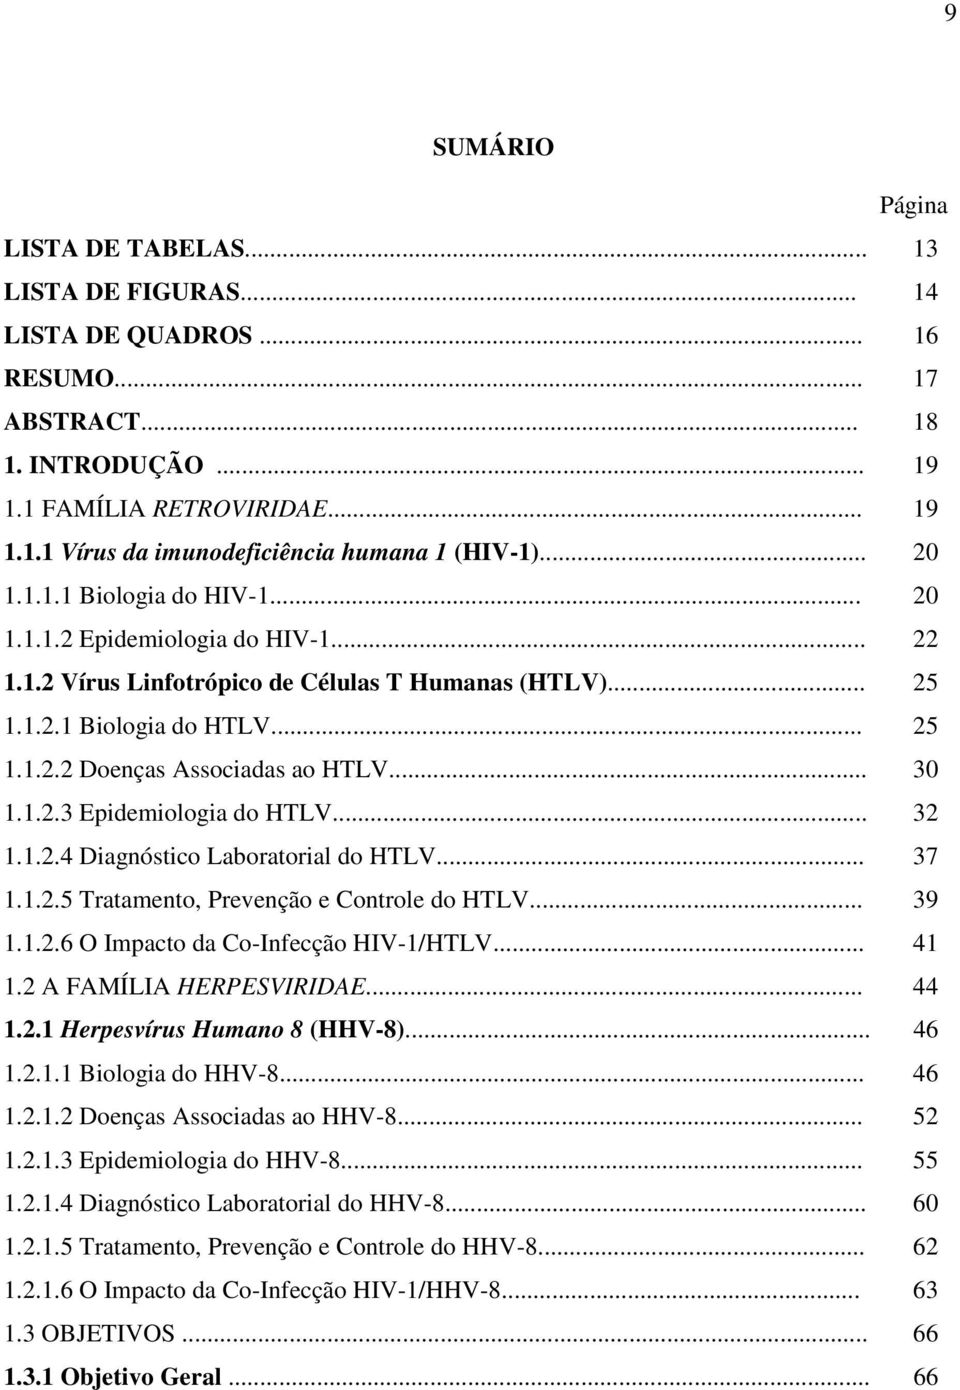 .. 30 1.1.2.3 Epidemiologia do HTLV... 32 1.1.2.4 Diagnóstico Laboratorial do HTLV... 37 1.1.2.5 Tratamento, Prevenção e Controle do HTLV... 39 1.1.2.6 O Impacto da Co-Infecção HIV-1/HTLV... 41 1.